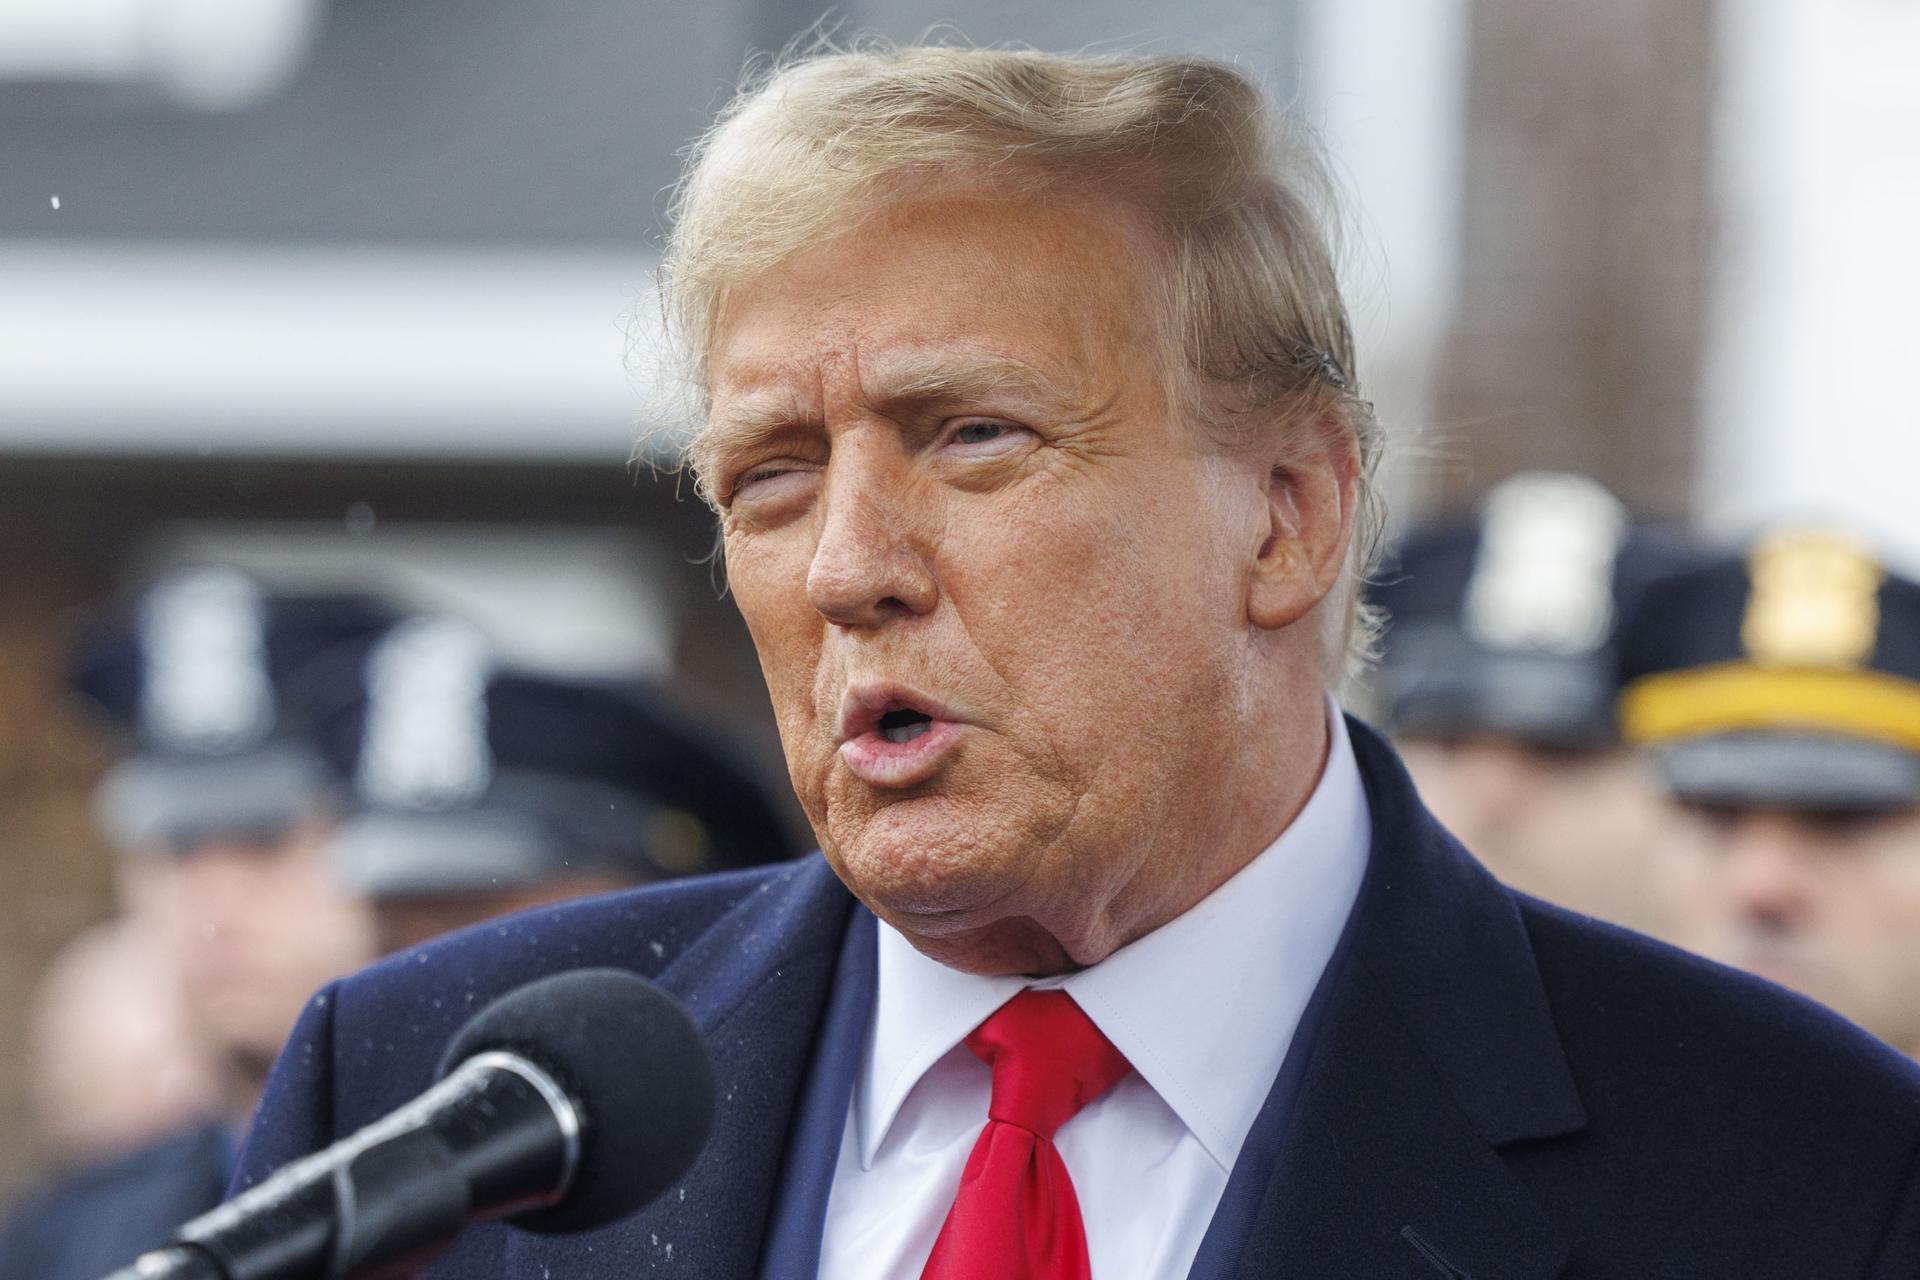 Trump promete la mayor deportación de migrantes de la historia en EEUU: “van a destruir el país”